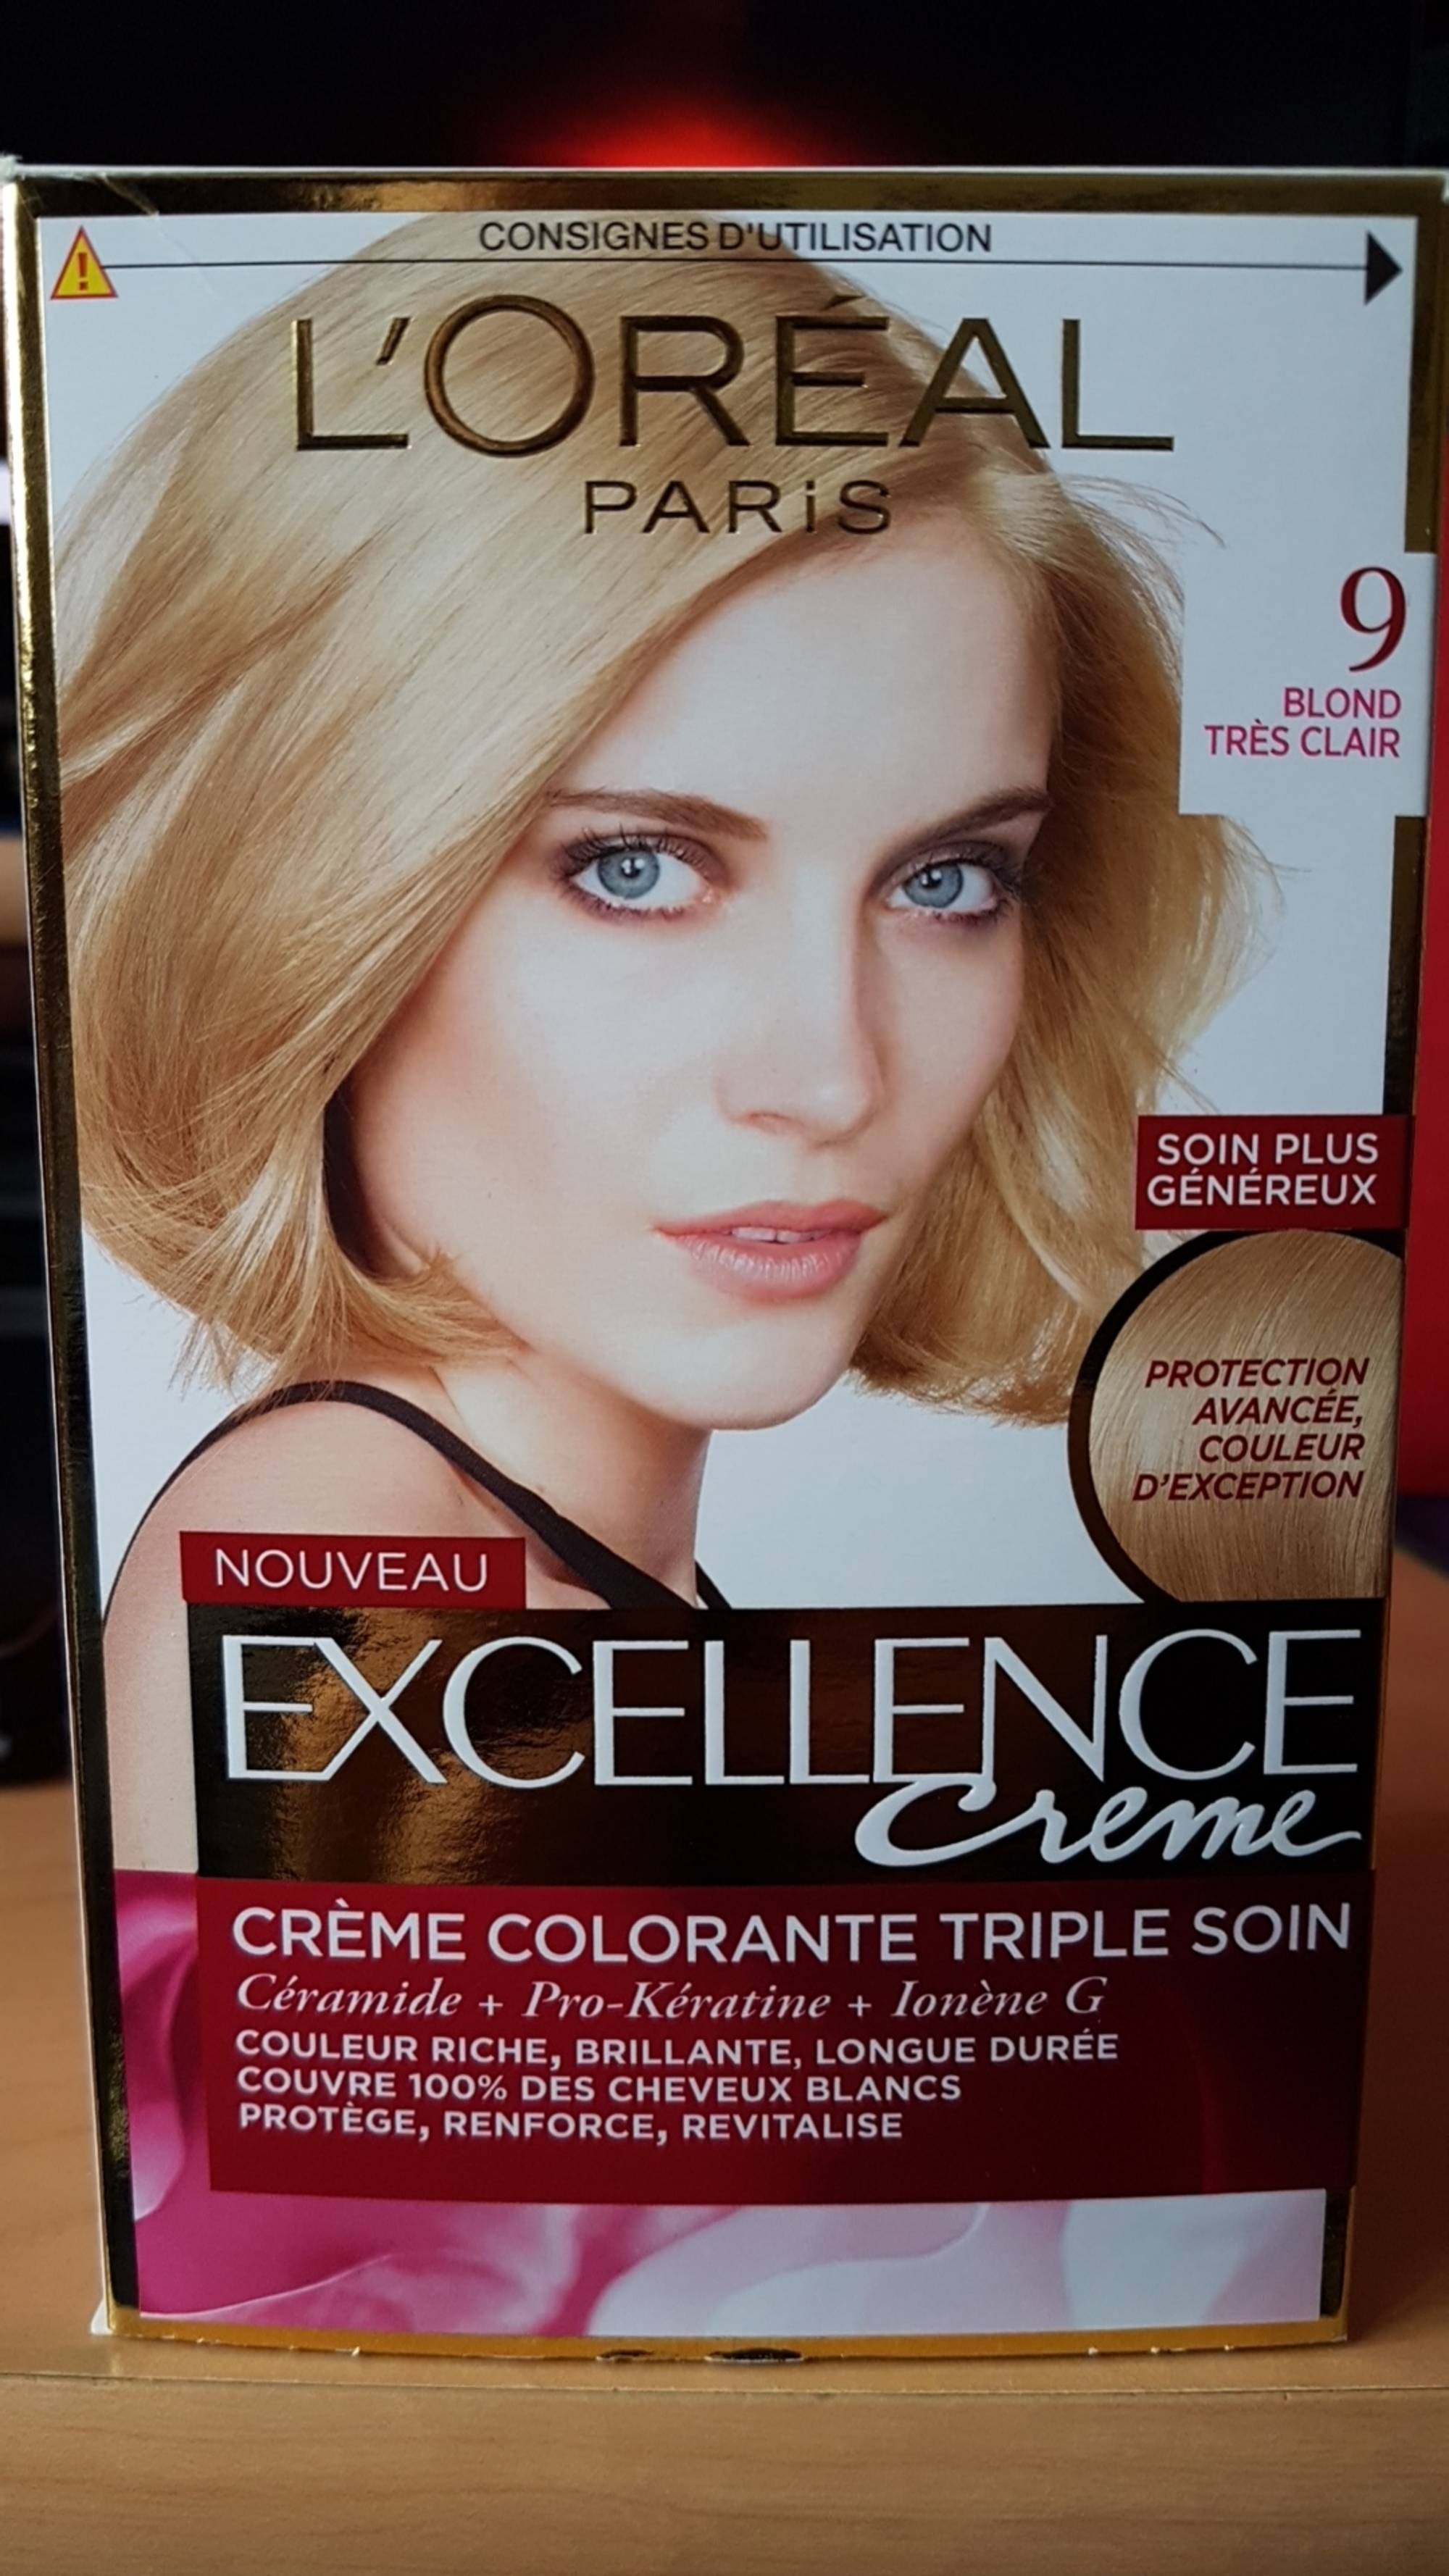 L'ORÉAL - Excellence crème - Crème colorante triple soin 9 blond très clair